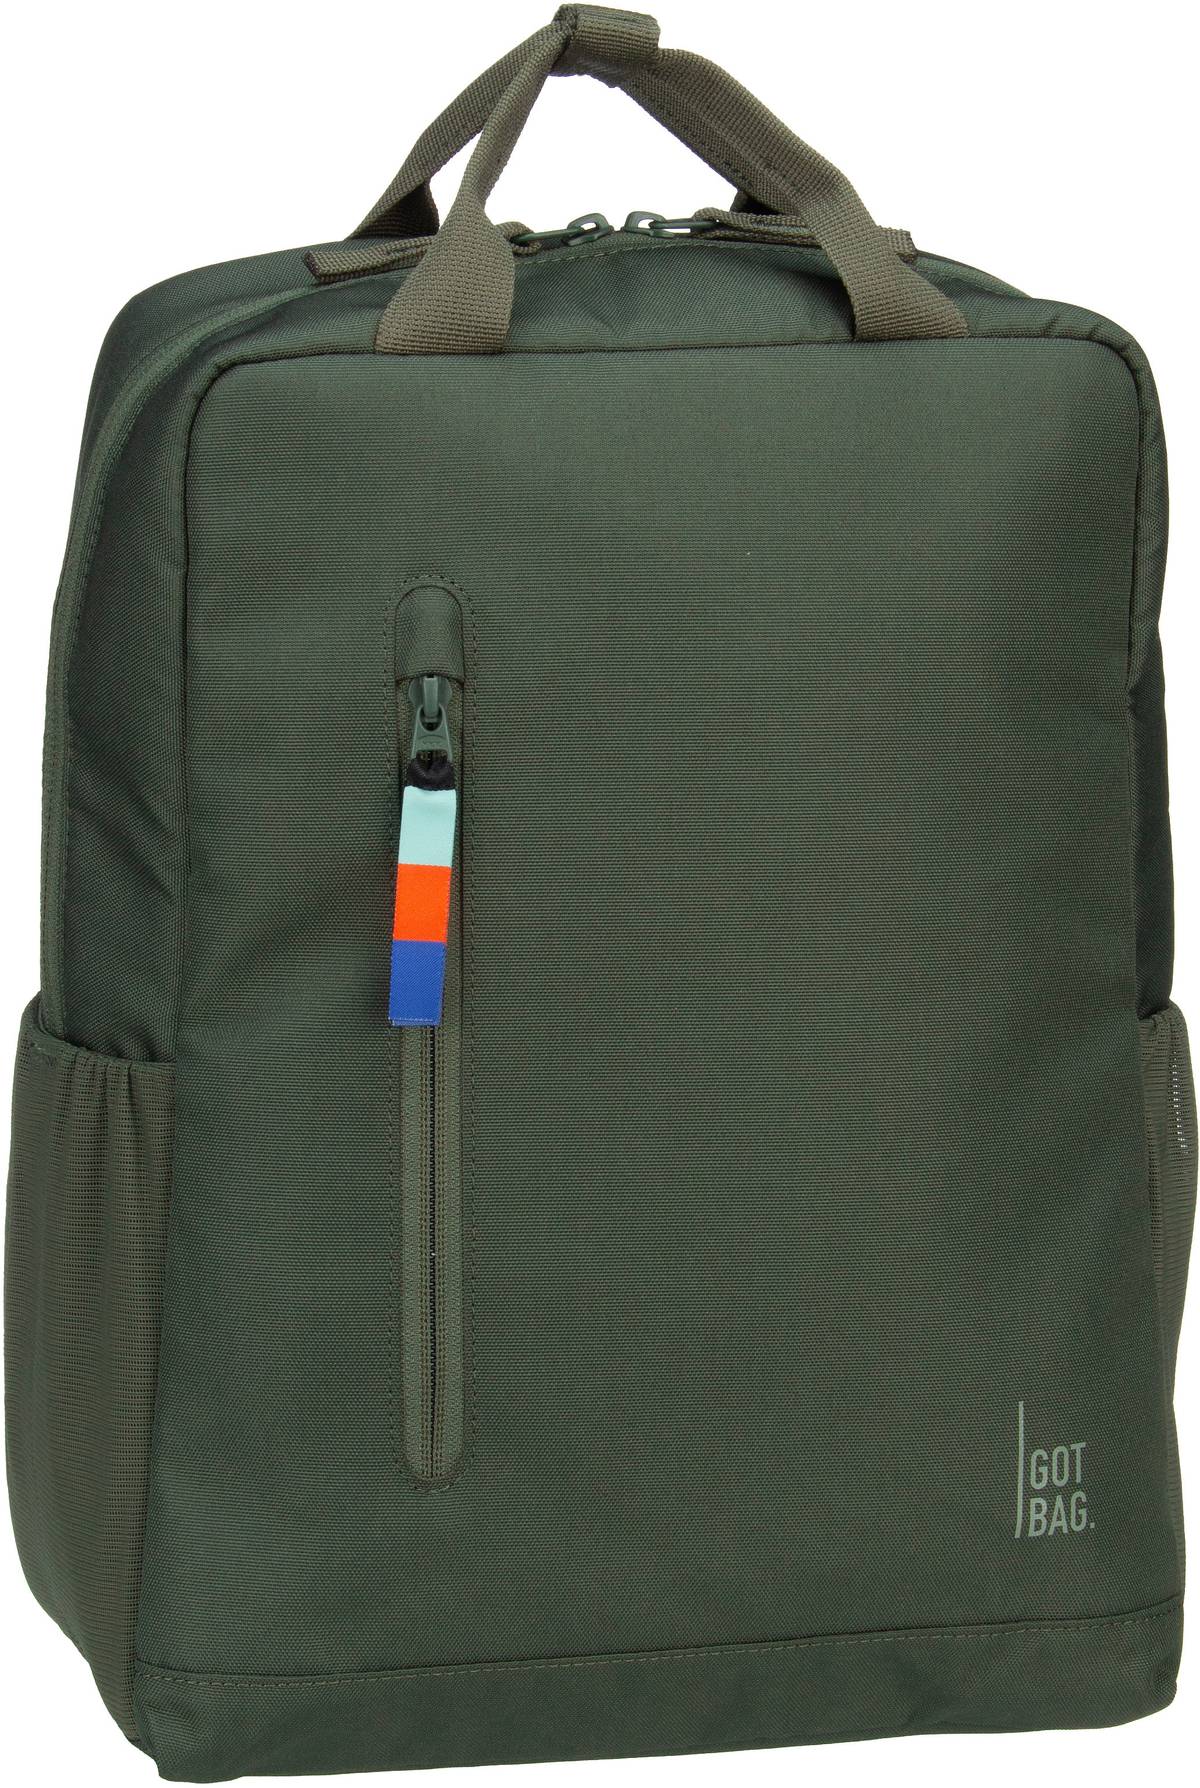 GOT BAG Daypack 2.0  in Grün (11 Liter), Rucksack / Backpack